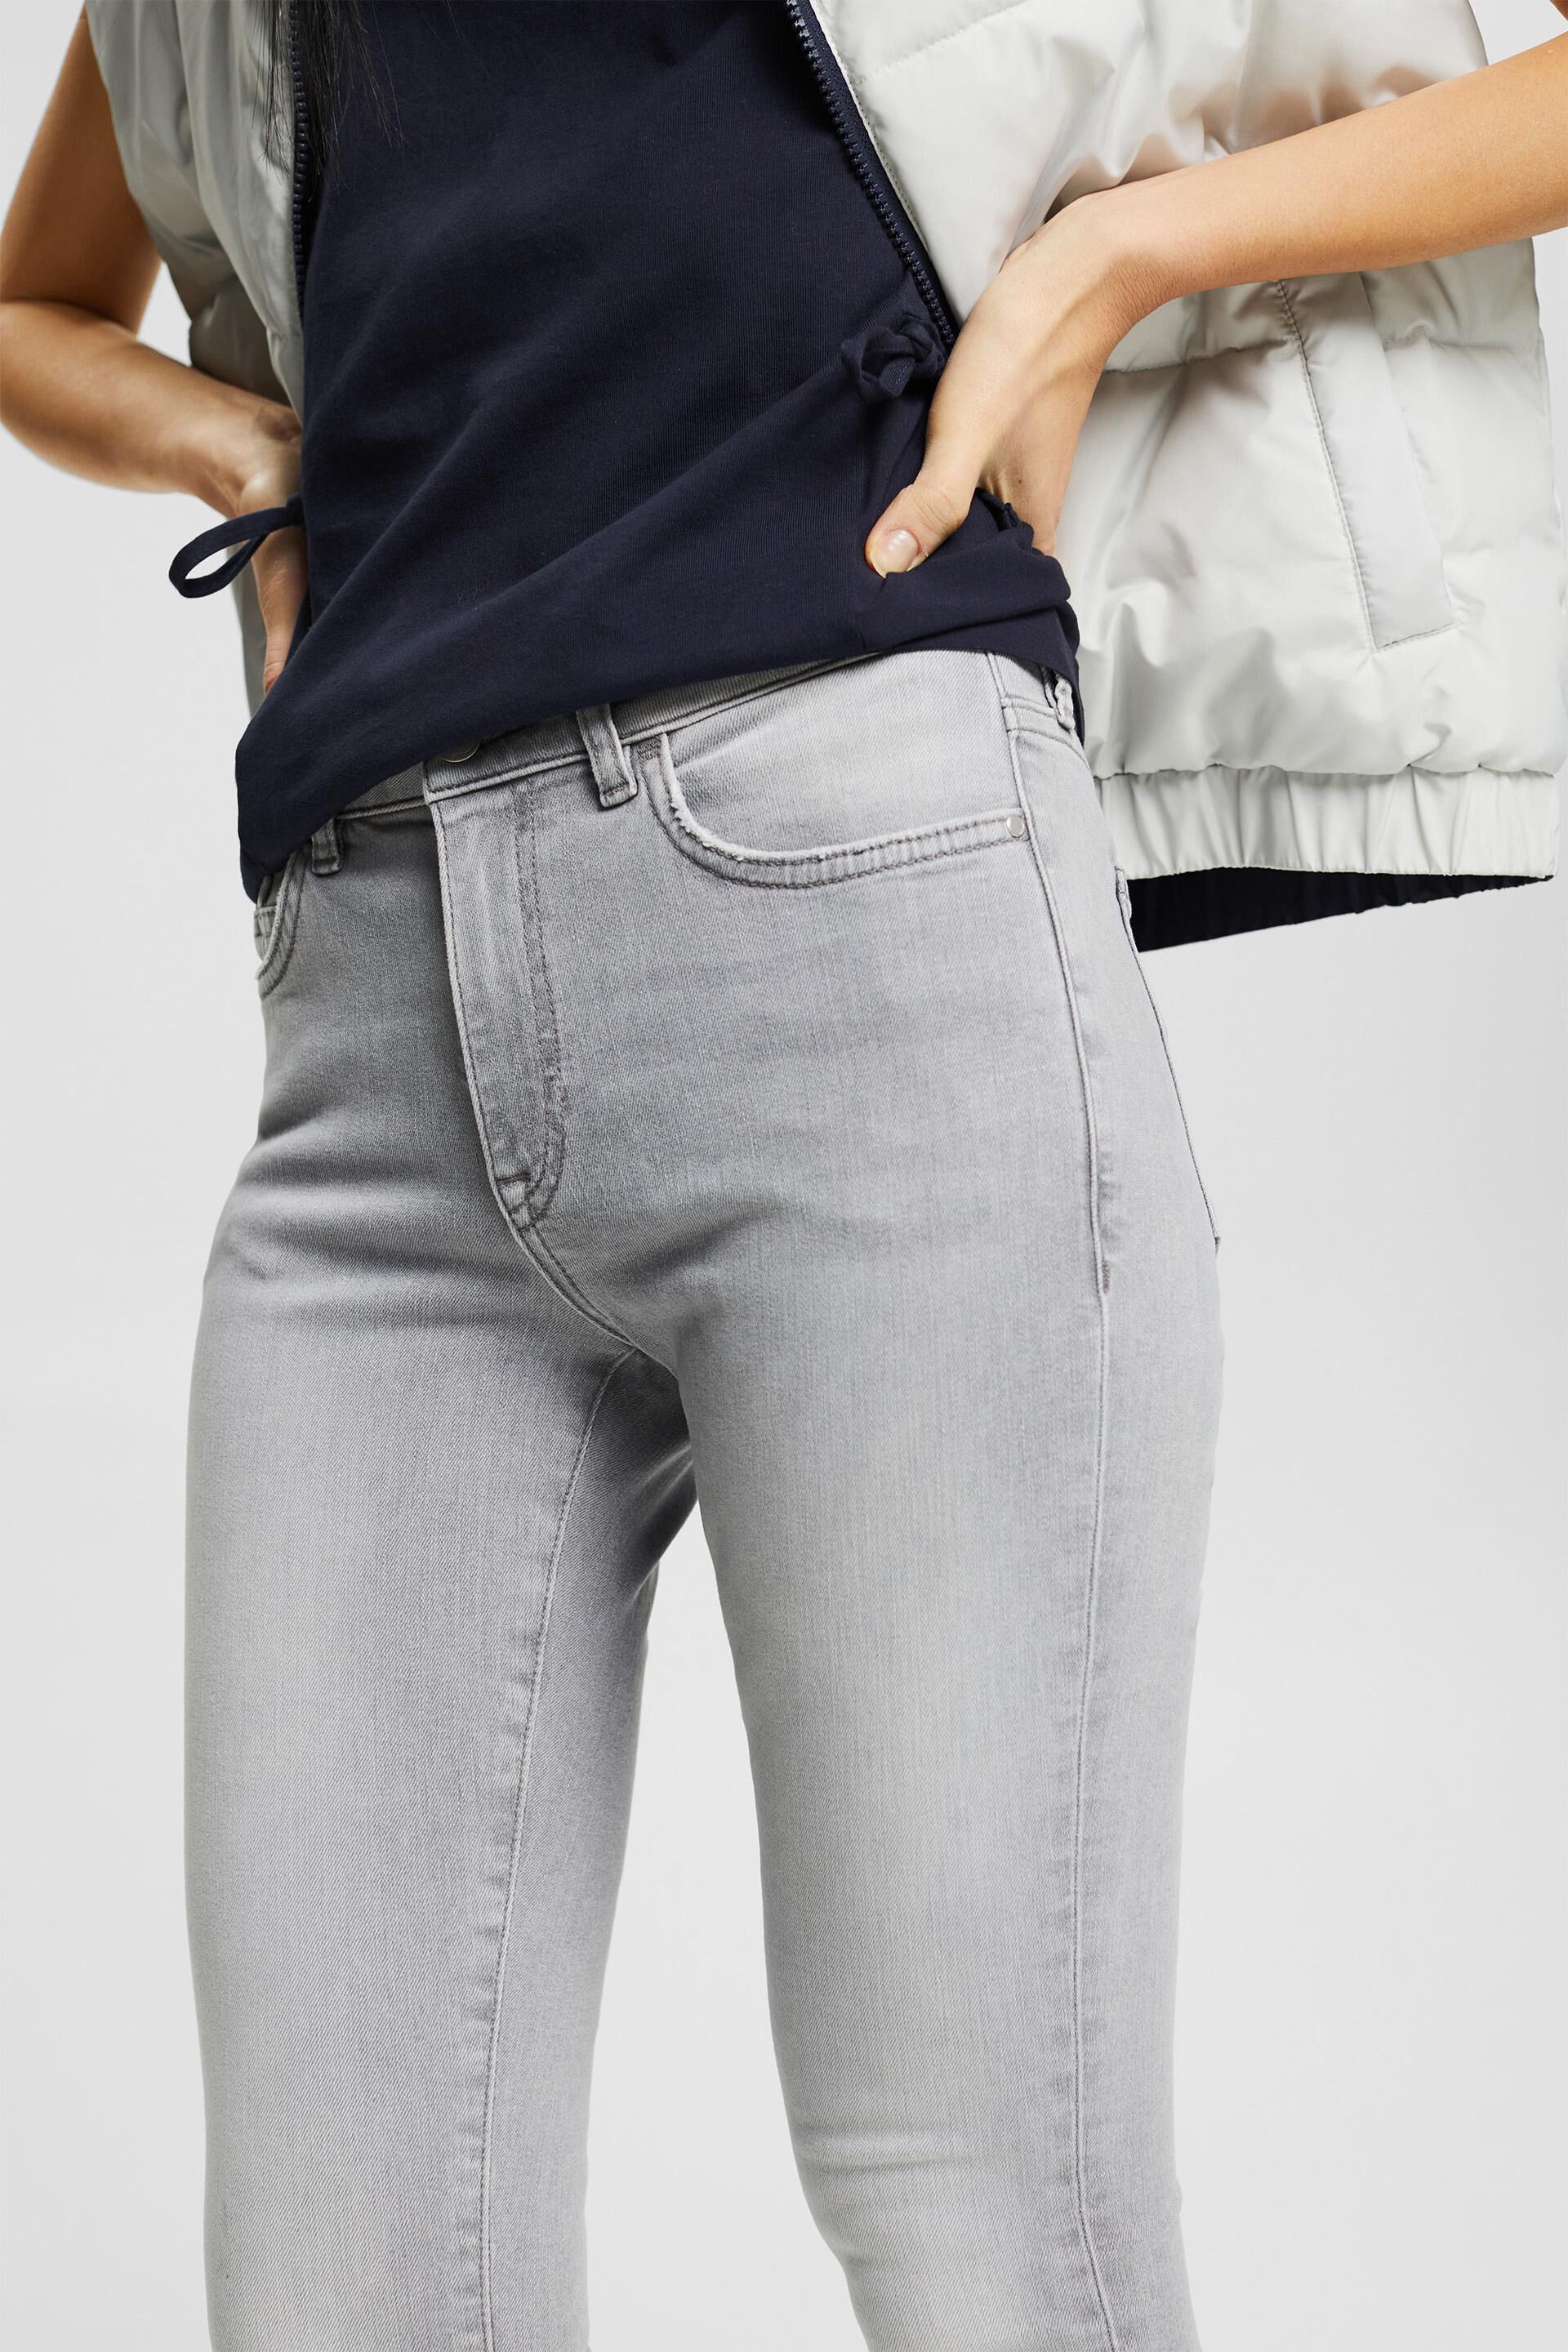 Mode Jeans Jeans slim en cuir Esprit Jeans slim gris ardoise Fixation de logo 